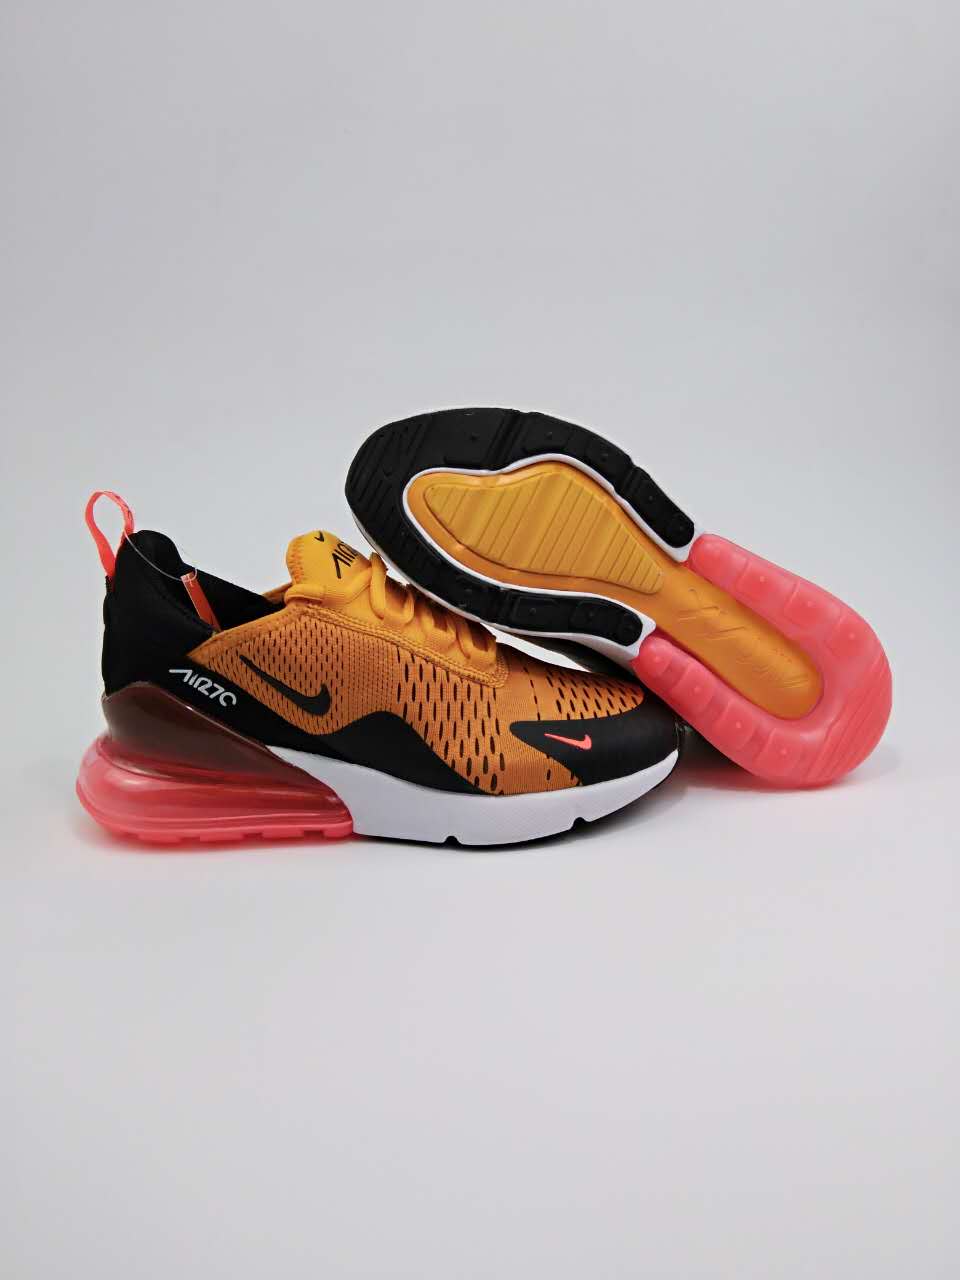 Women Nike Air Max Flair 270 Nano Orange Black Shoes